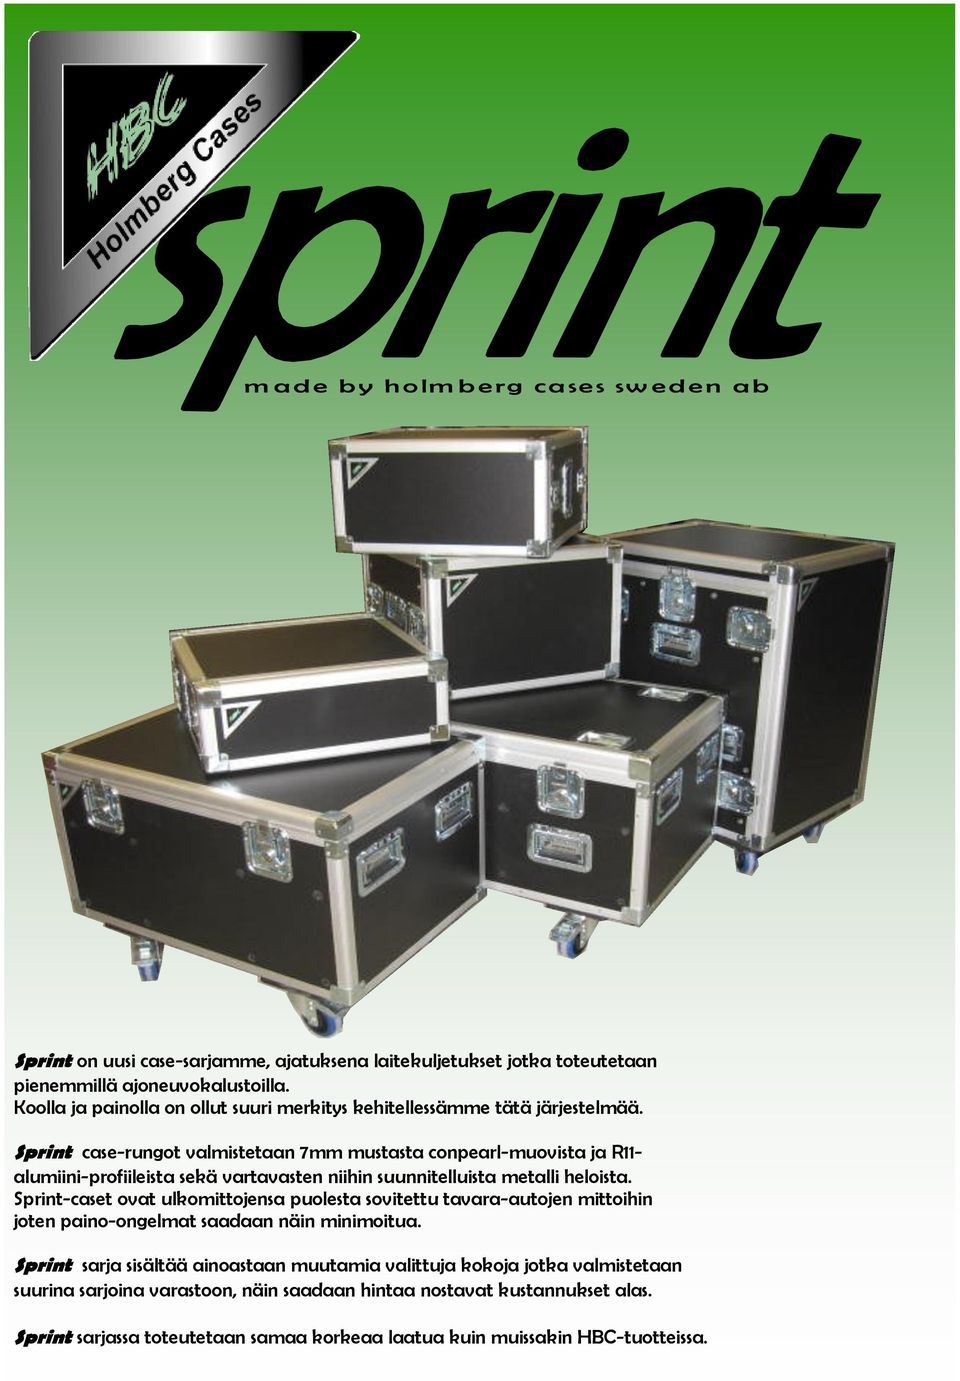 Sprint case-rungot valmistetaan 7mm mustasta conpearl-muovista ja R11- alumiini-profiileista sekä vartavasten niihin suunnitelluista metalli heloista.